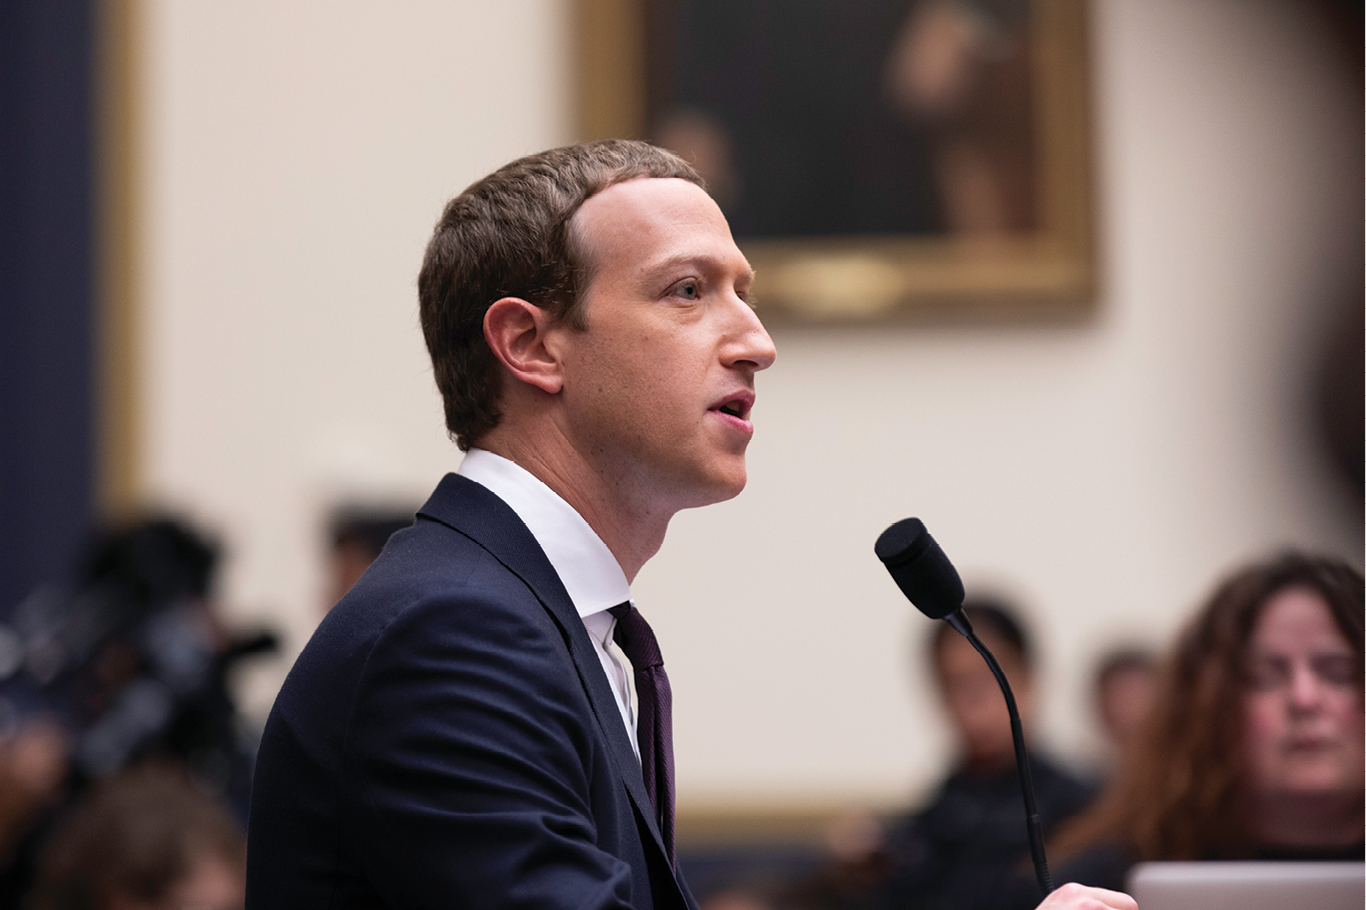 Zuckerberg, de perfil. Ele veste terno e está sentado em frente a um microfone.